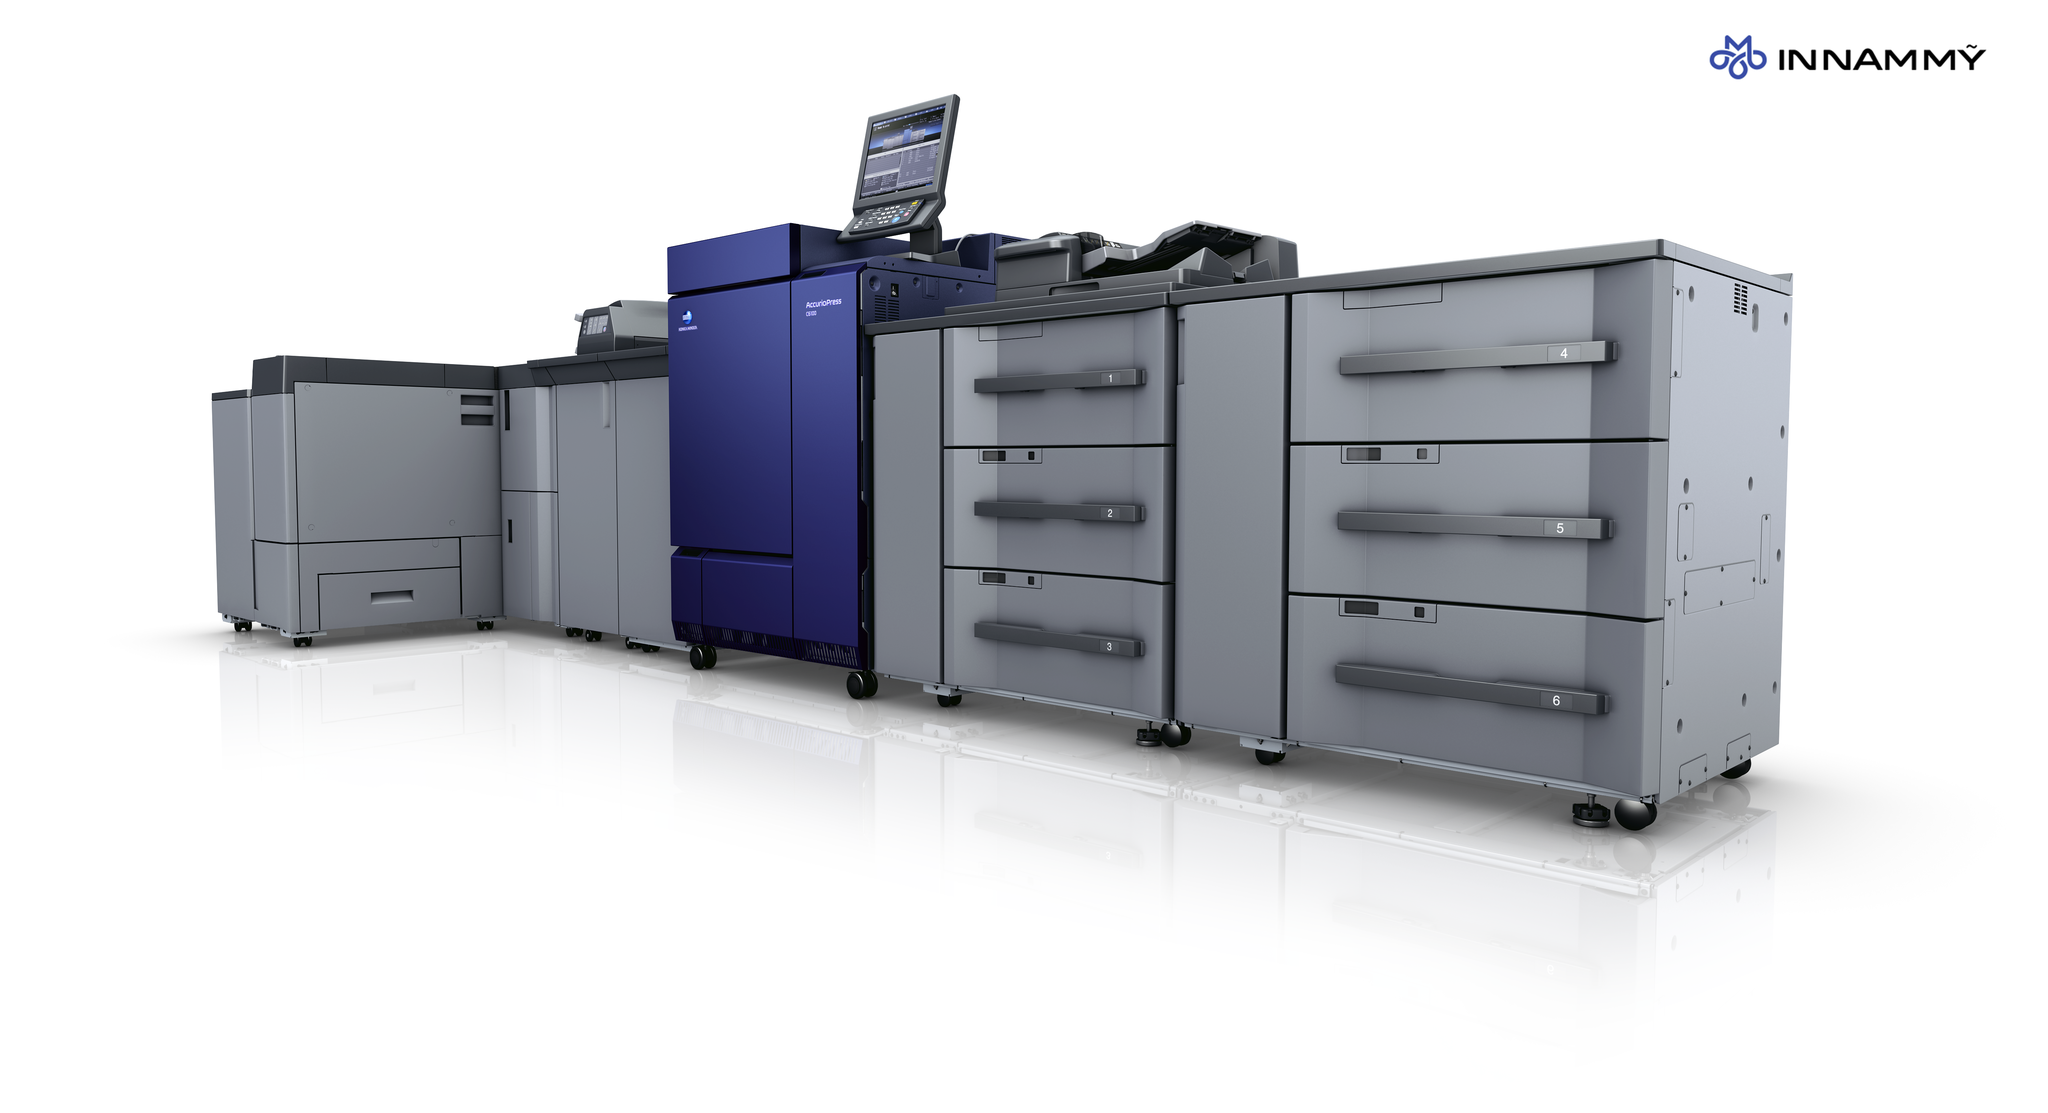 Máy in công nghiệp Konica C6085 công nghệ in ấn hiện đại nhất thị trường